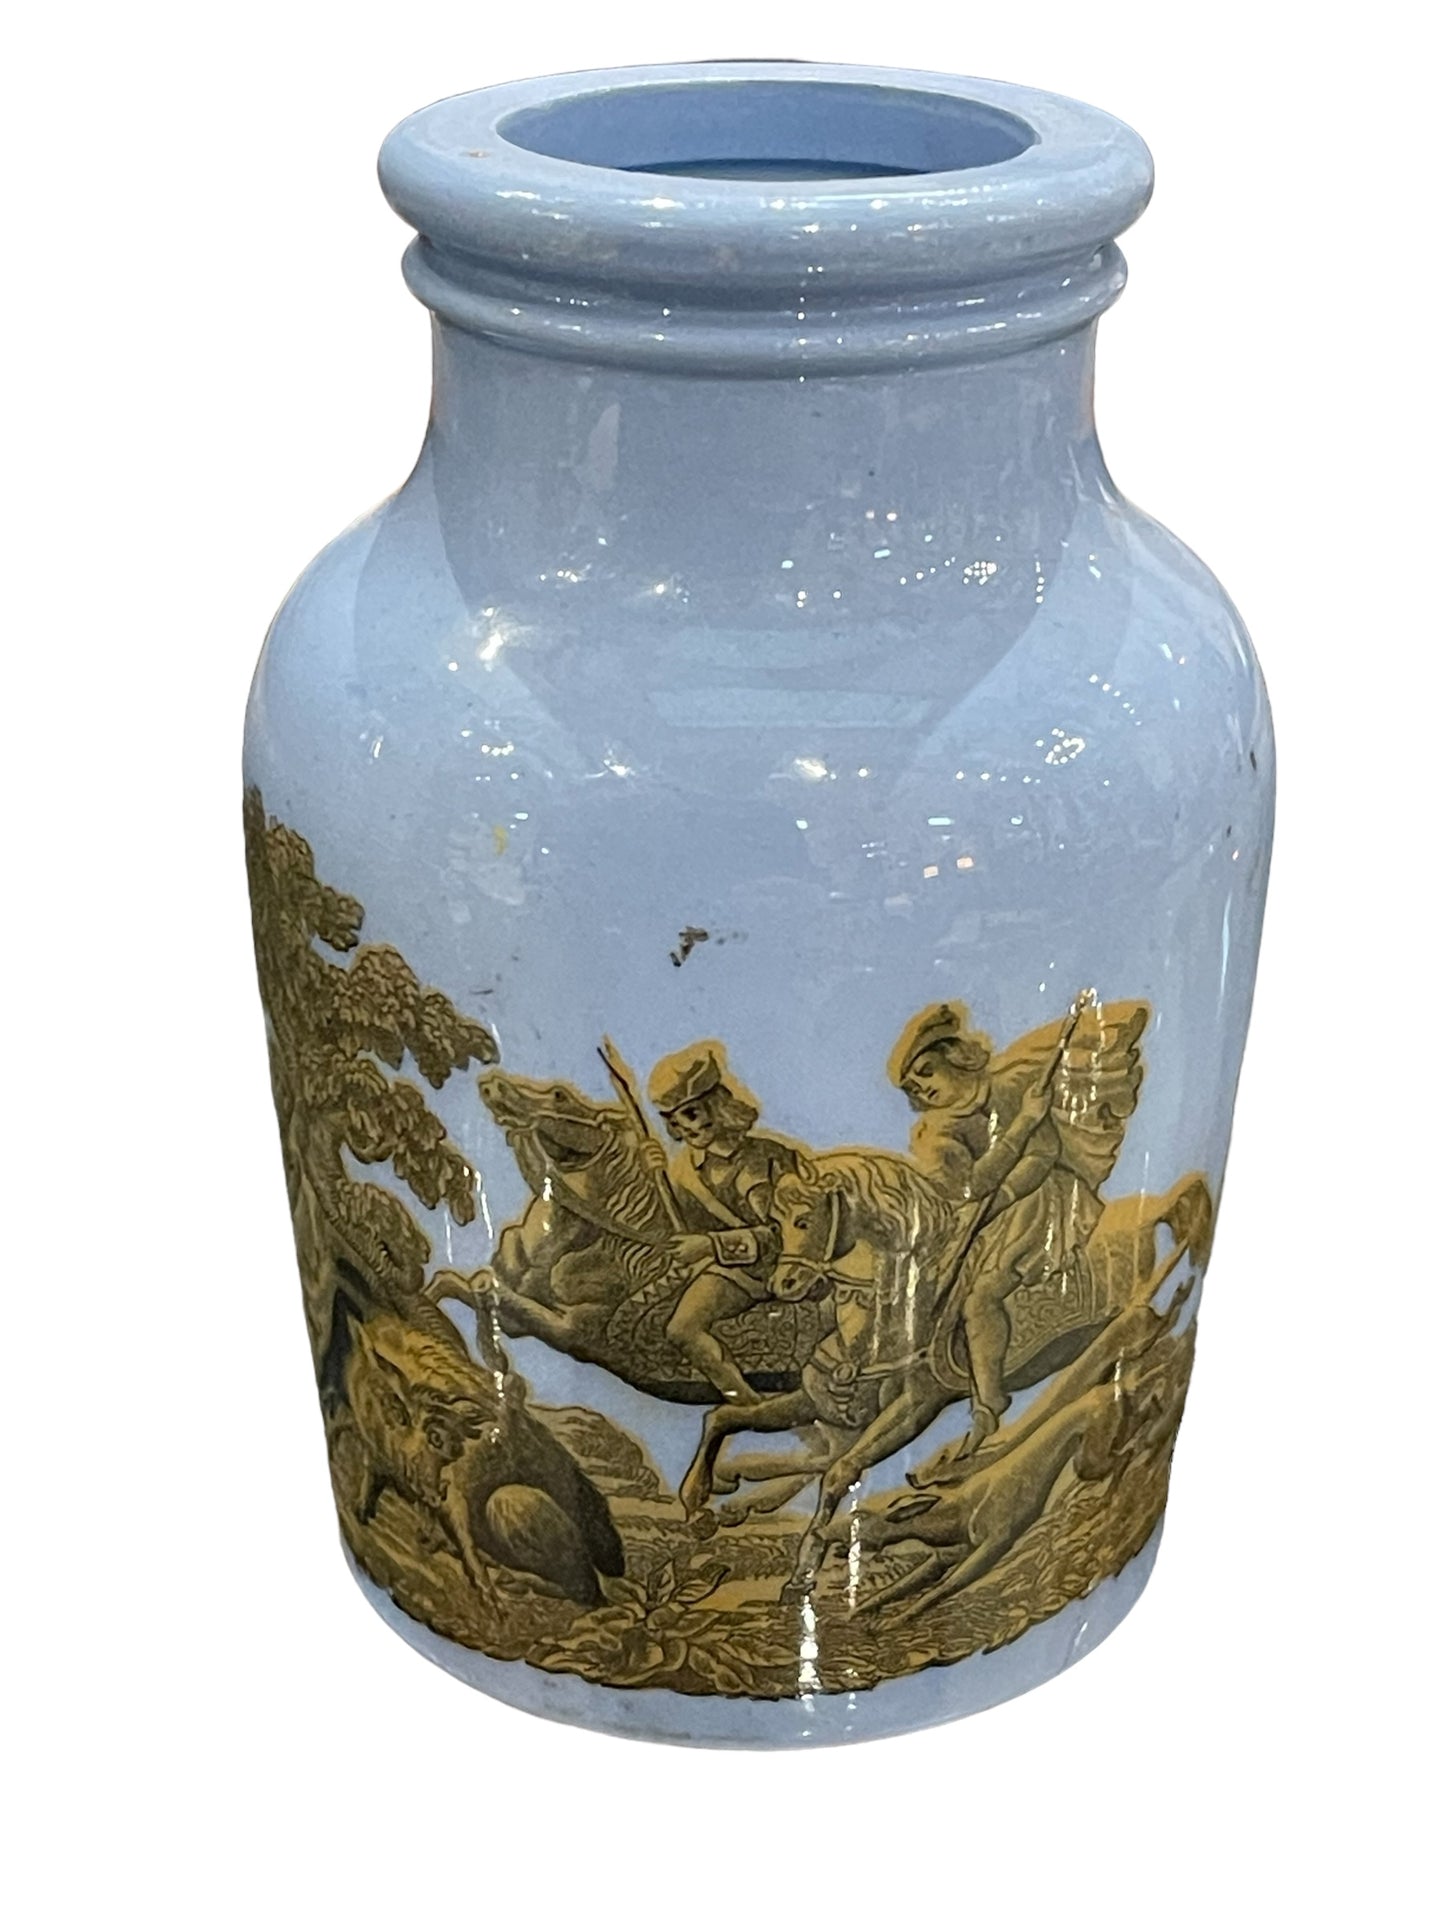 Antique Prattware Hunting Scene Jars Circa 1860